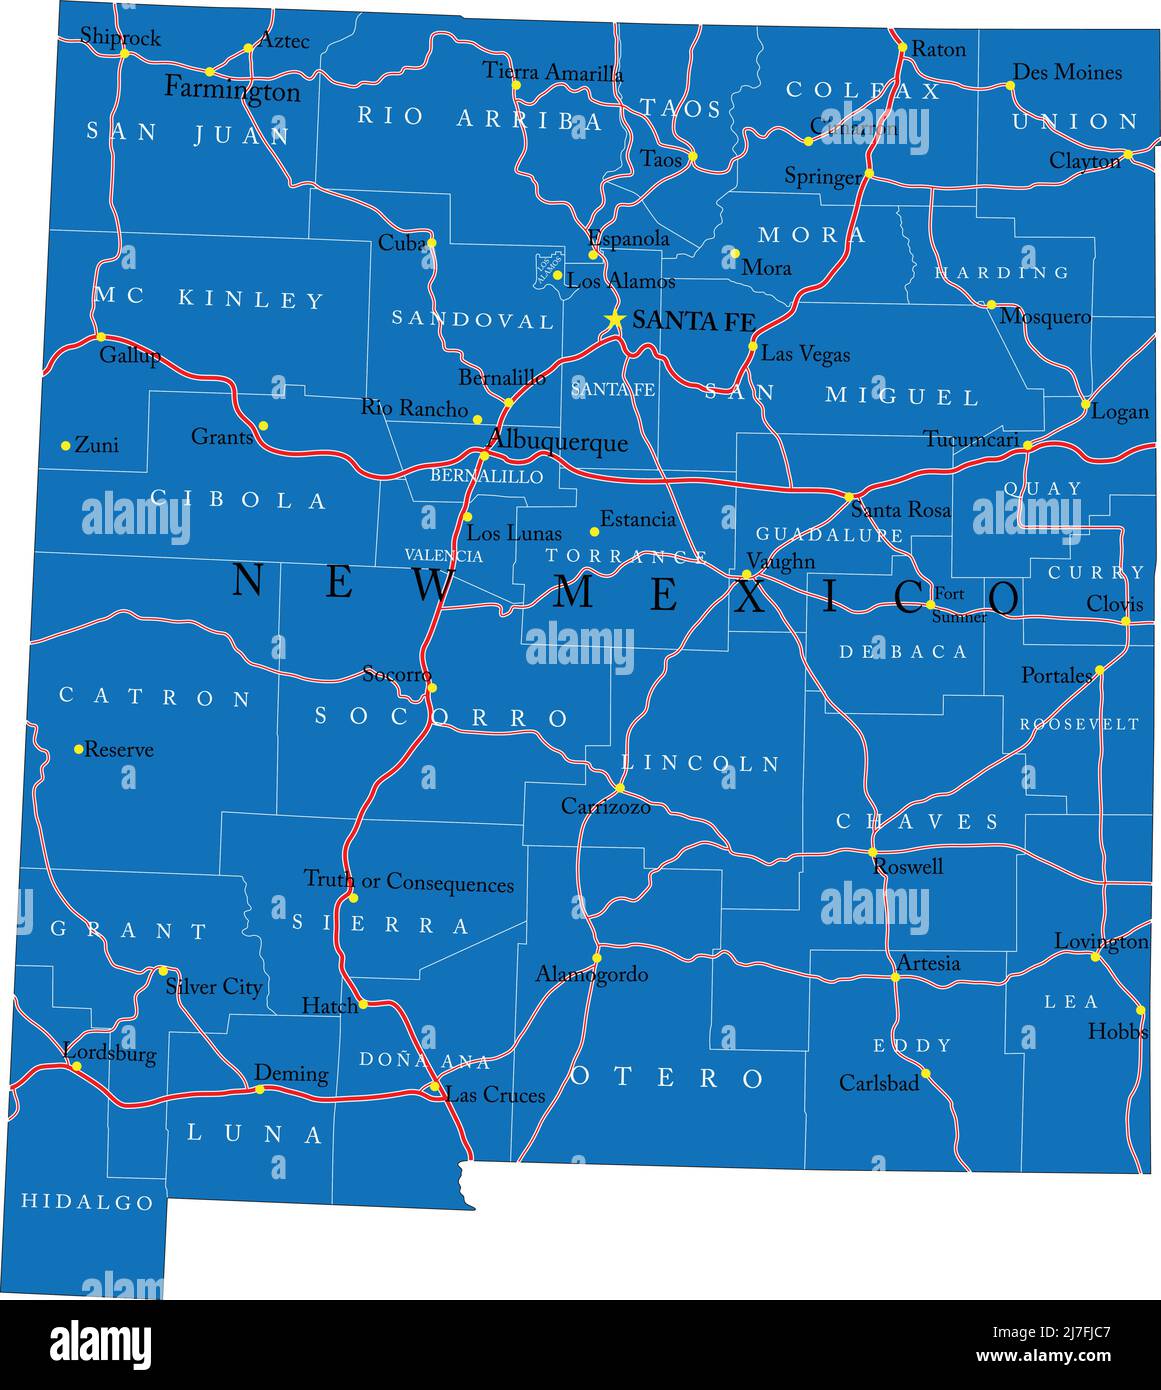 Mappa dettagliata dello stato del New Mexico, in formato vettoriale, con confini della contea, strade e città principali. Illustrazione Vettoriale